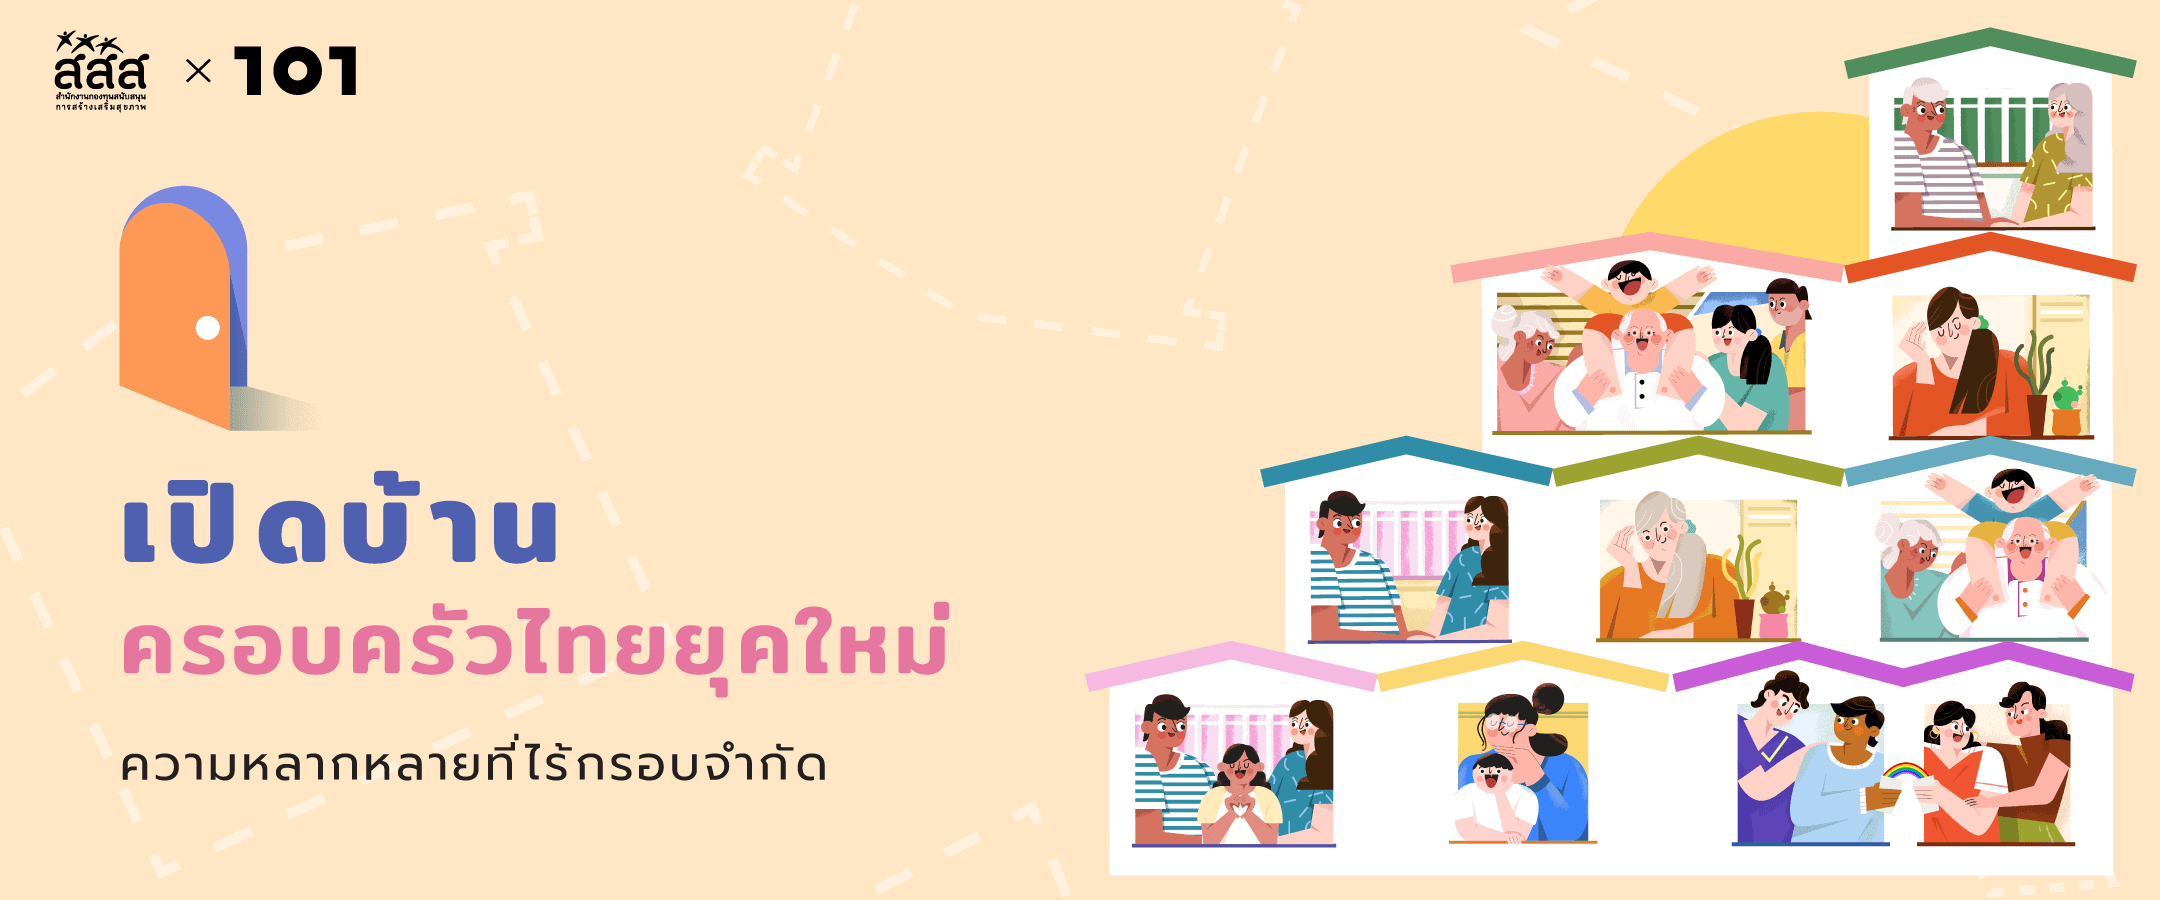 เปิดบ้านครอบครัวไทยยุคใหม่: ความหลากหลายที่ไร้กรอบจำกัด